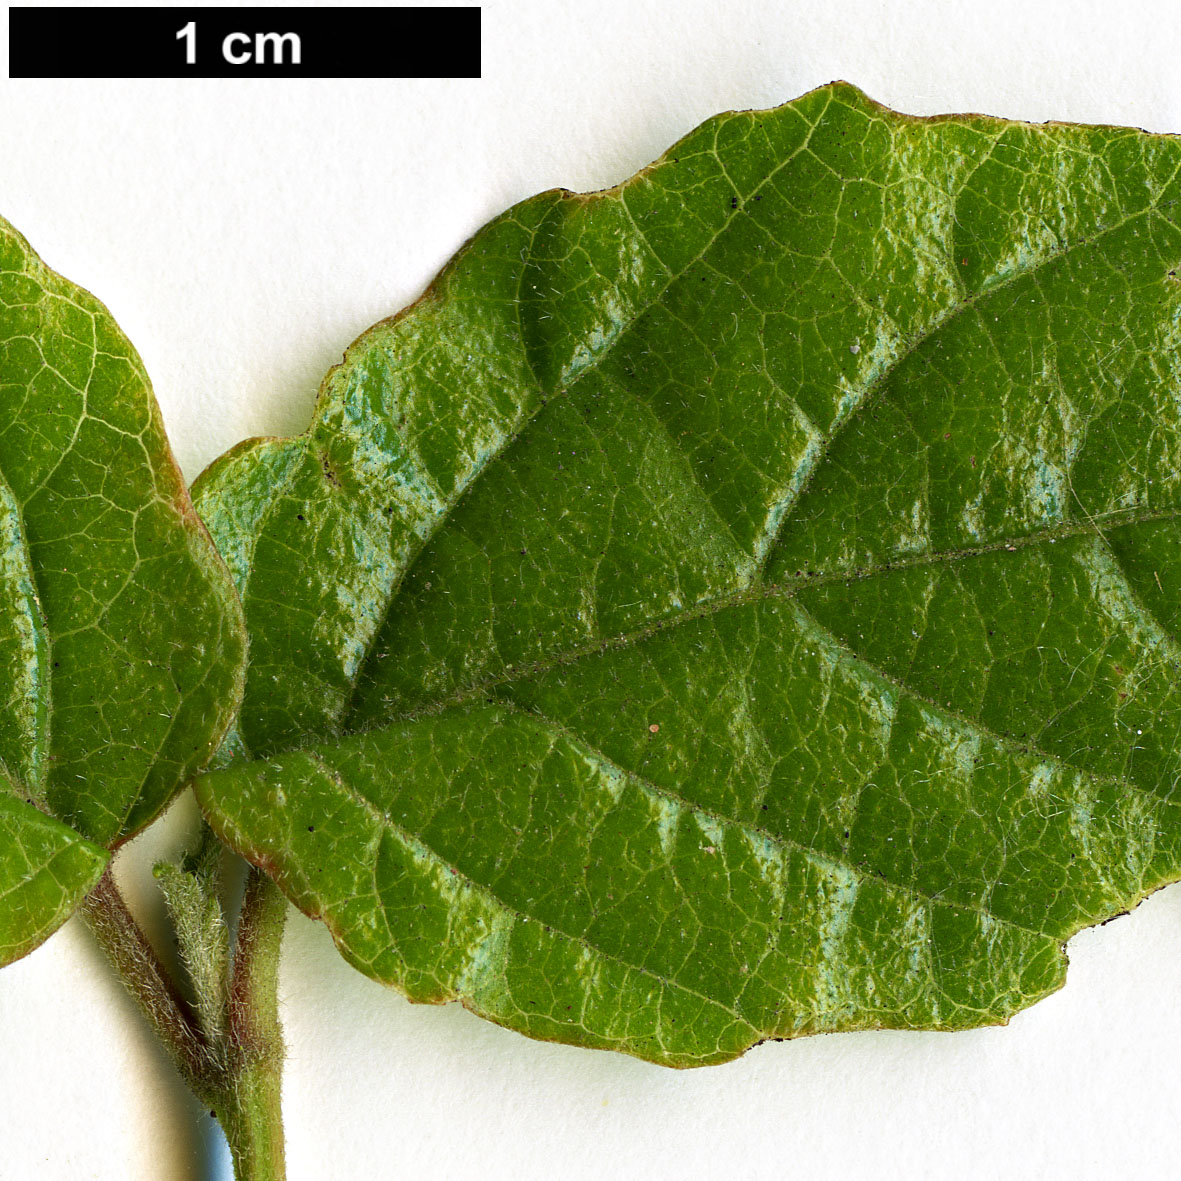 High resolution image: Family: Adoxaceae - Genus: Viburnum - Taxon: formosanum 